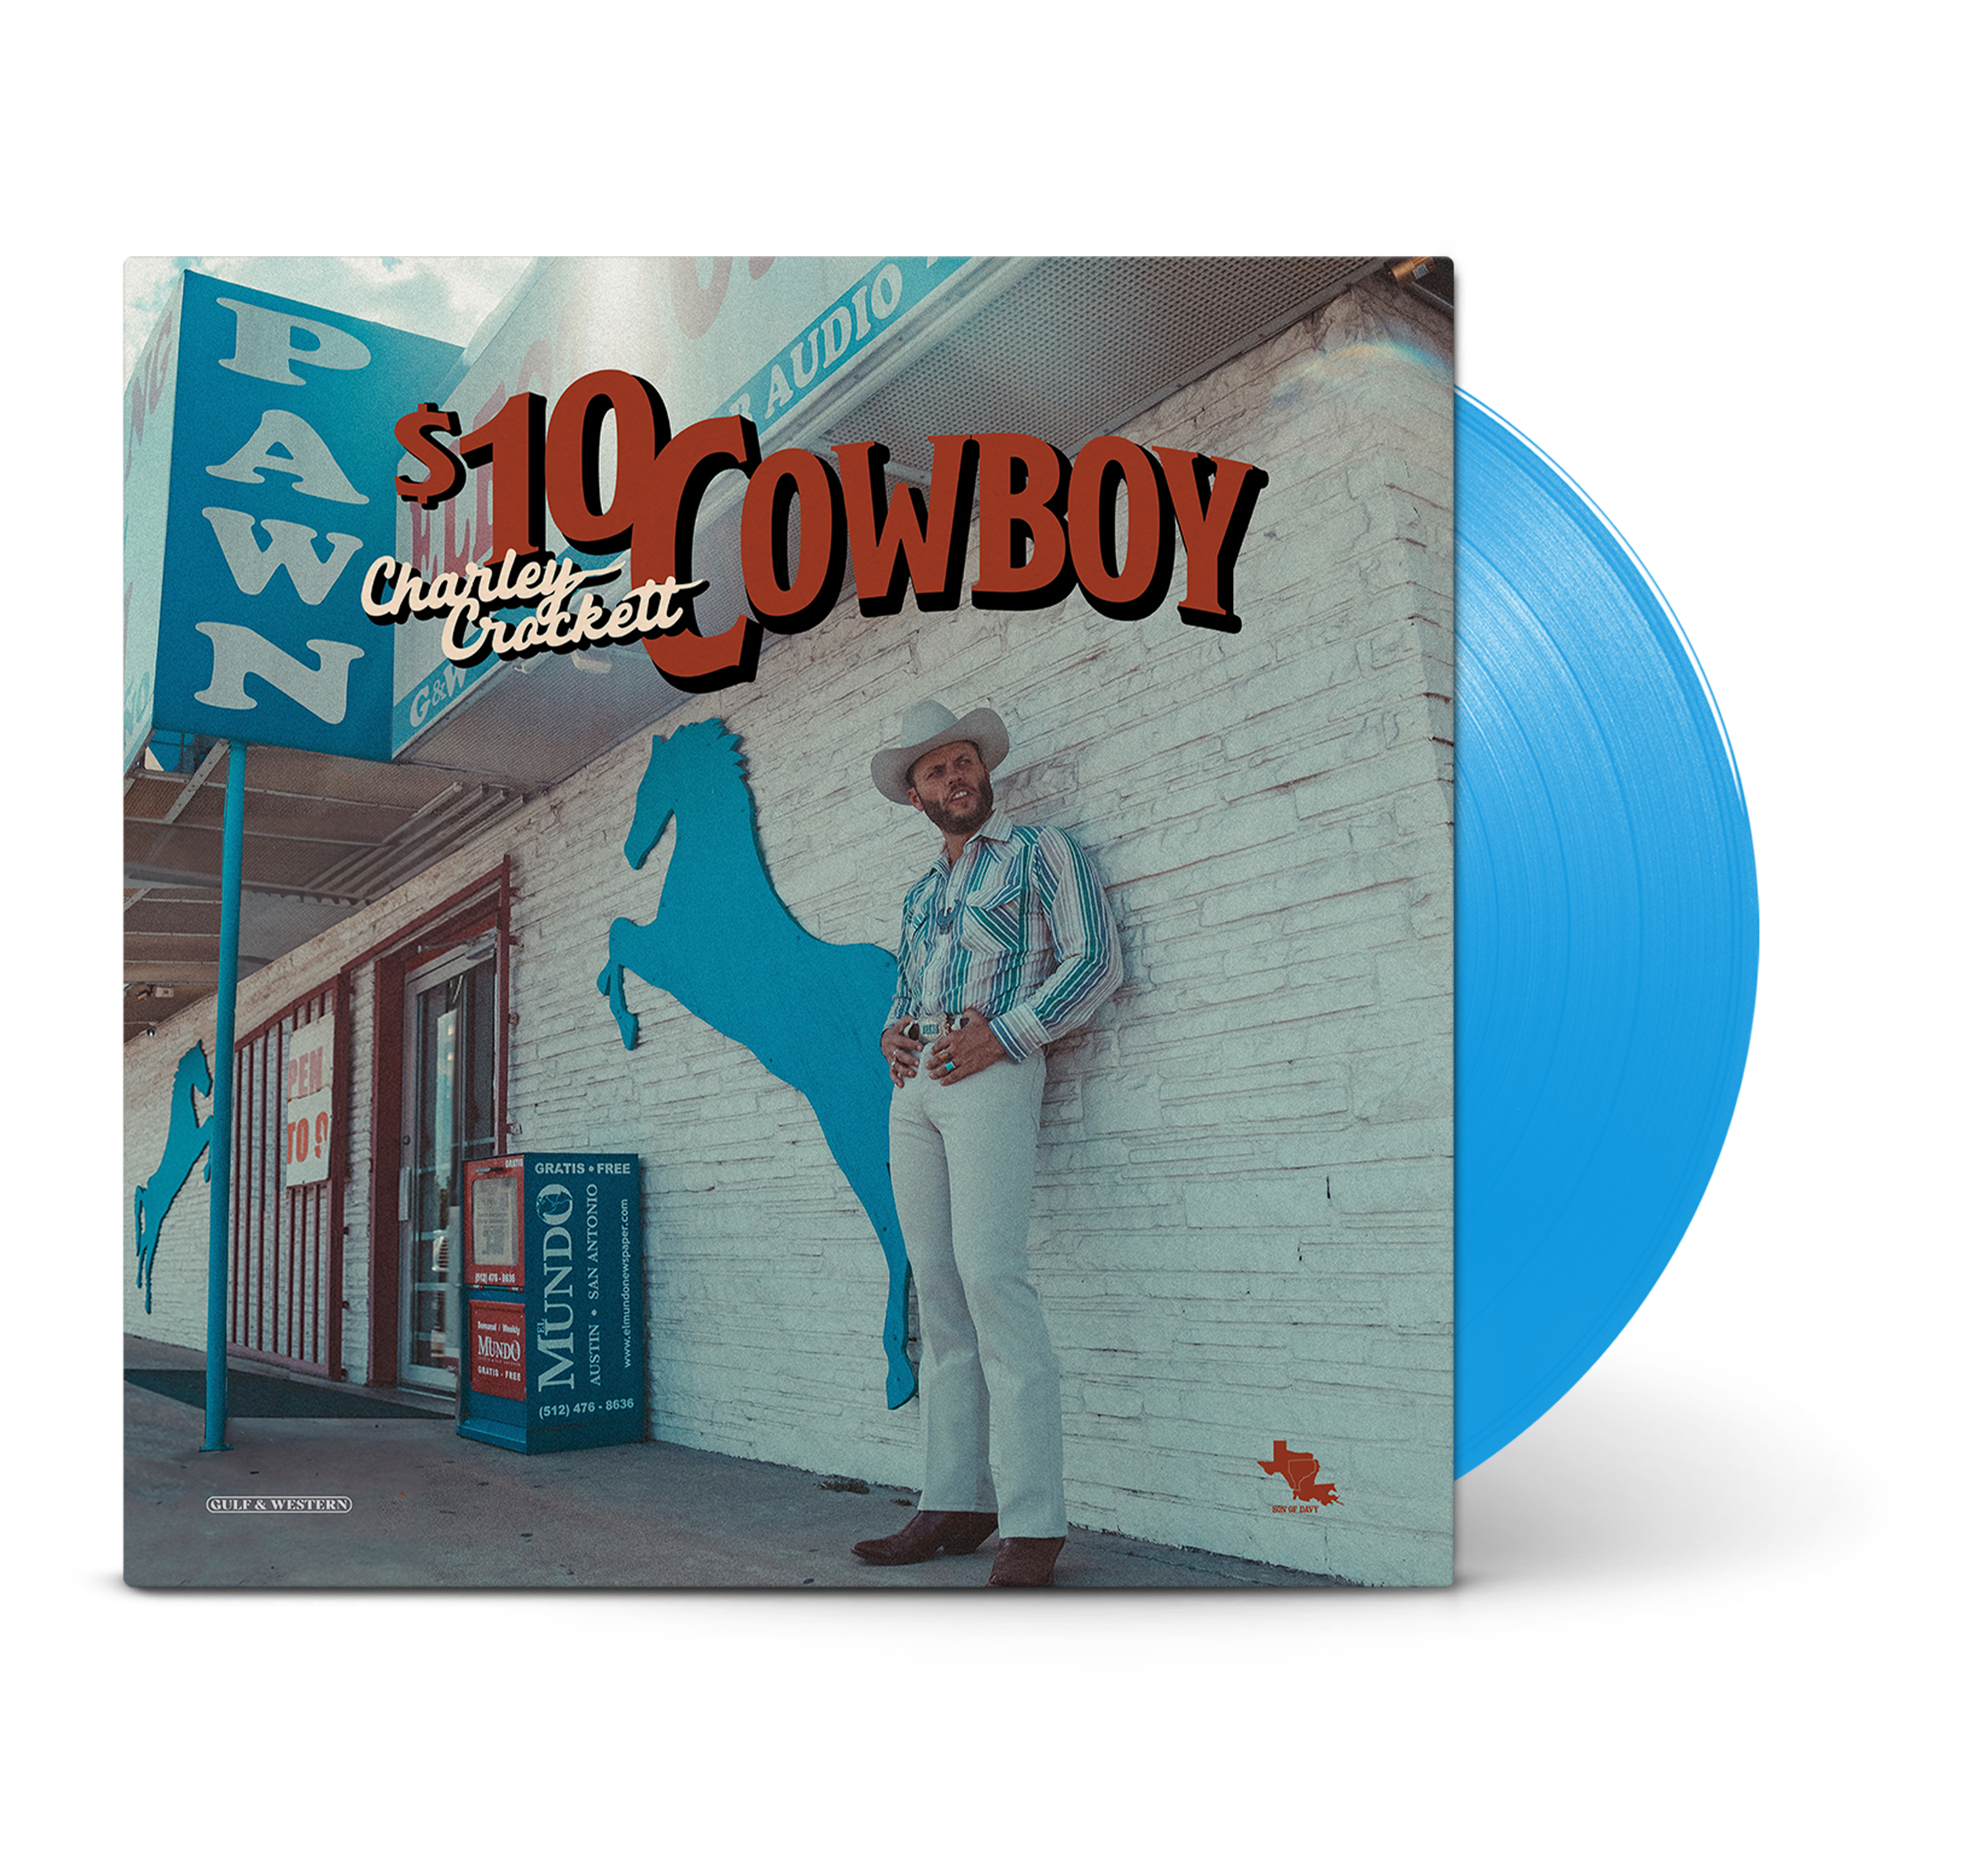 Charley Crockett- $10 Cowboy (Indie Exclusive)